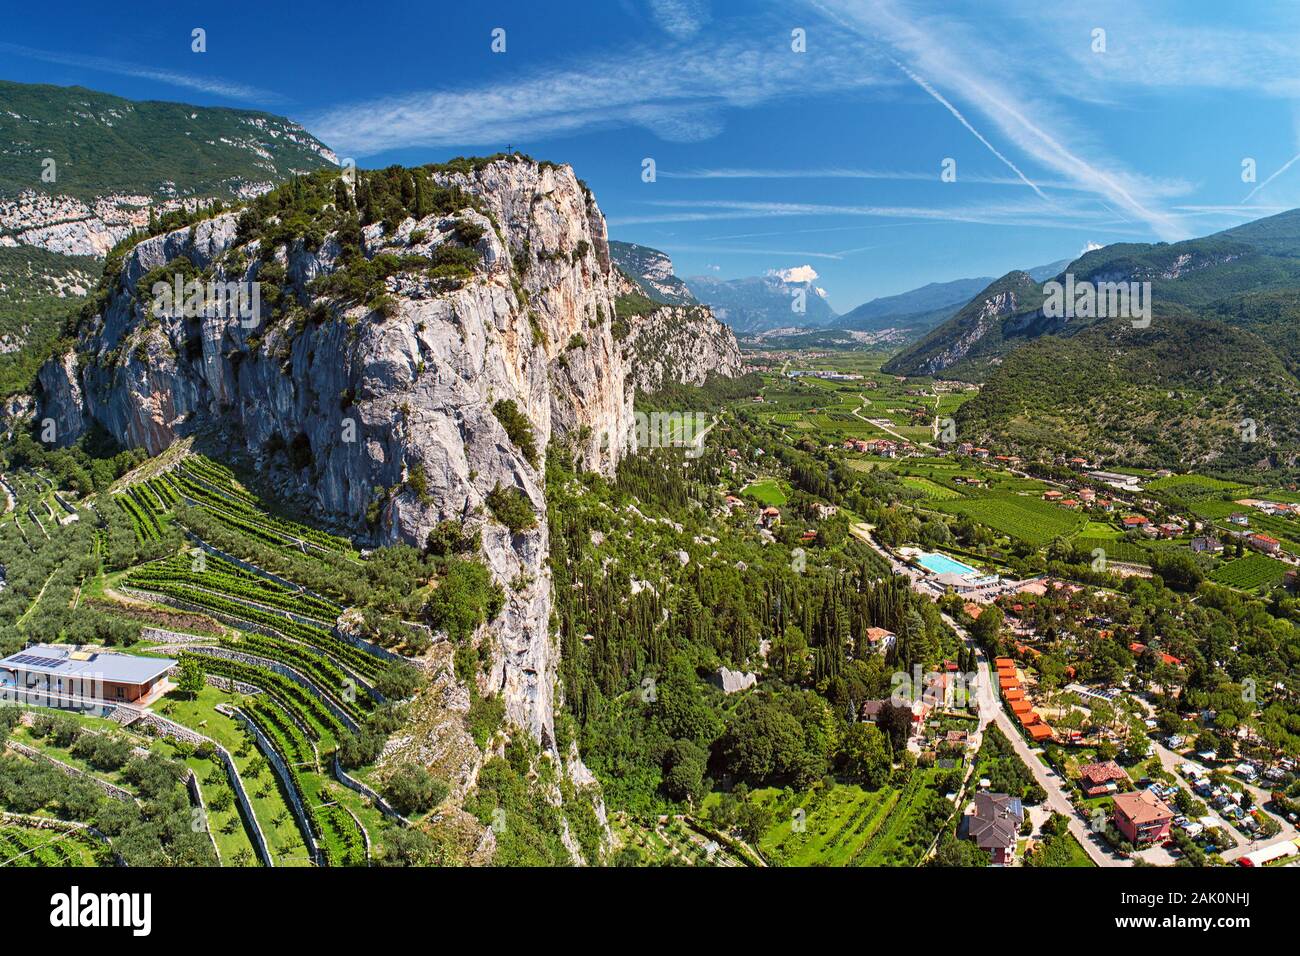 Landschaft - Tal mit Dorf zwischen Bergen, hoher Berg mit Weinbergen, Blick von Arco Schloss (Castello di Arco) in der Nähe des Lago di Garda, Italien Stockfoto